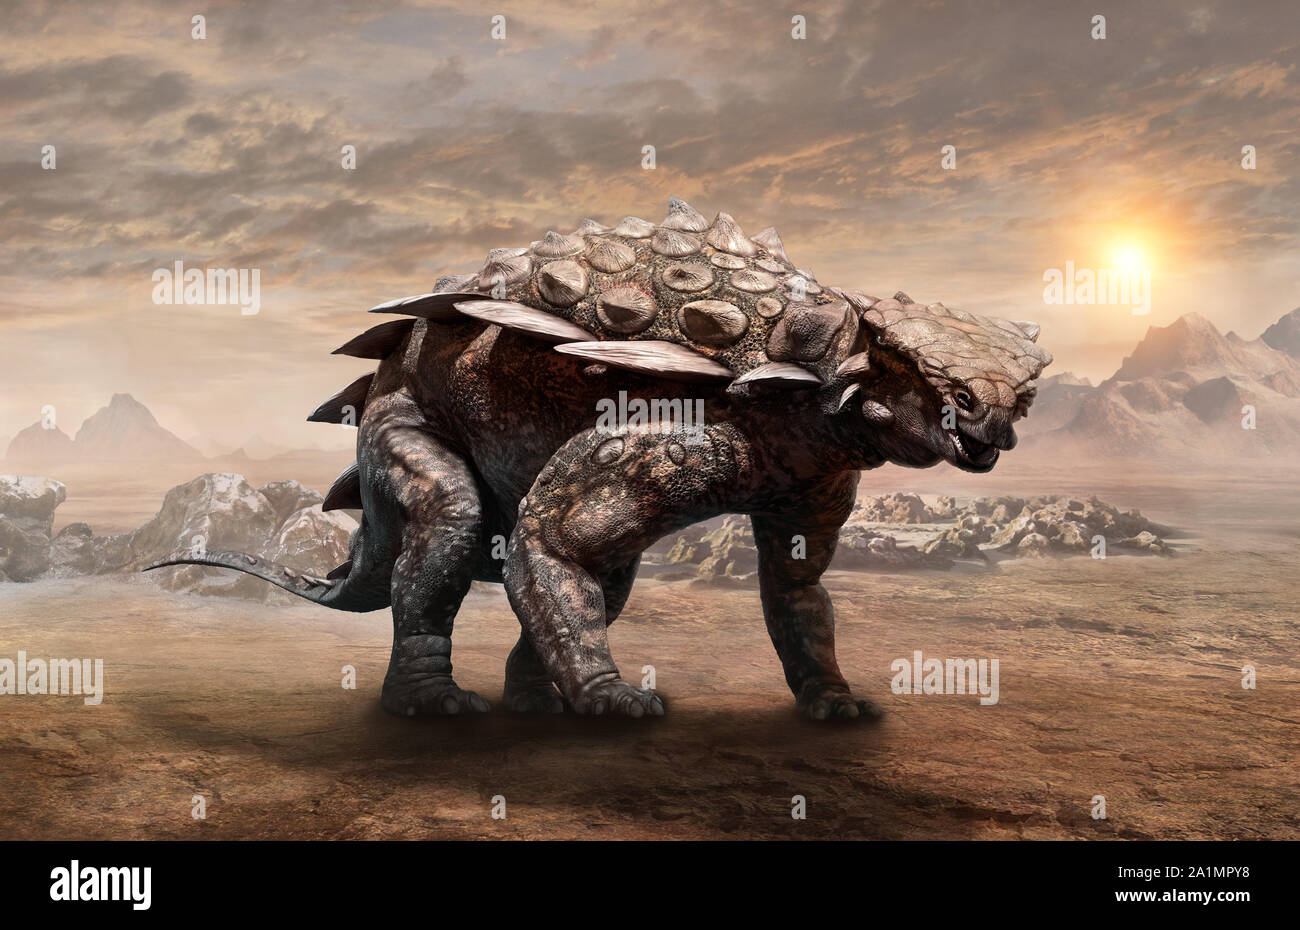 Gargoyleosaurus dinosaur scene 3D illustration Stock Photo